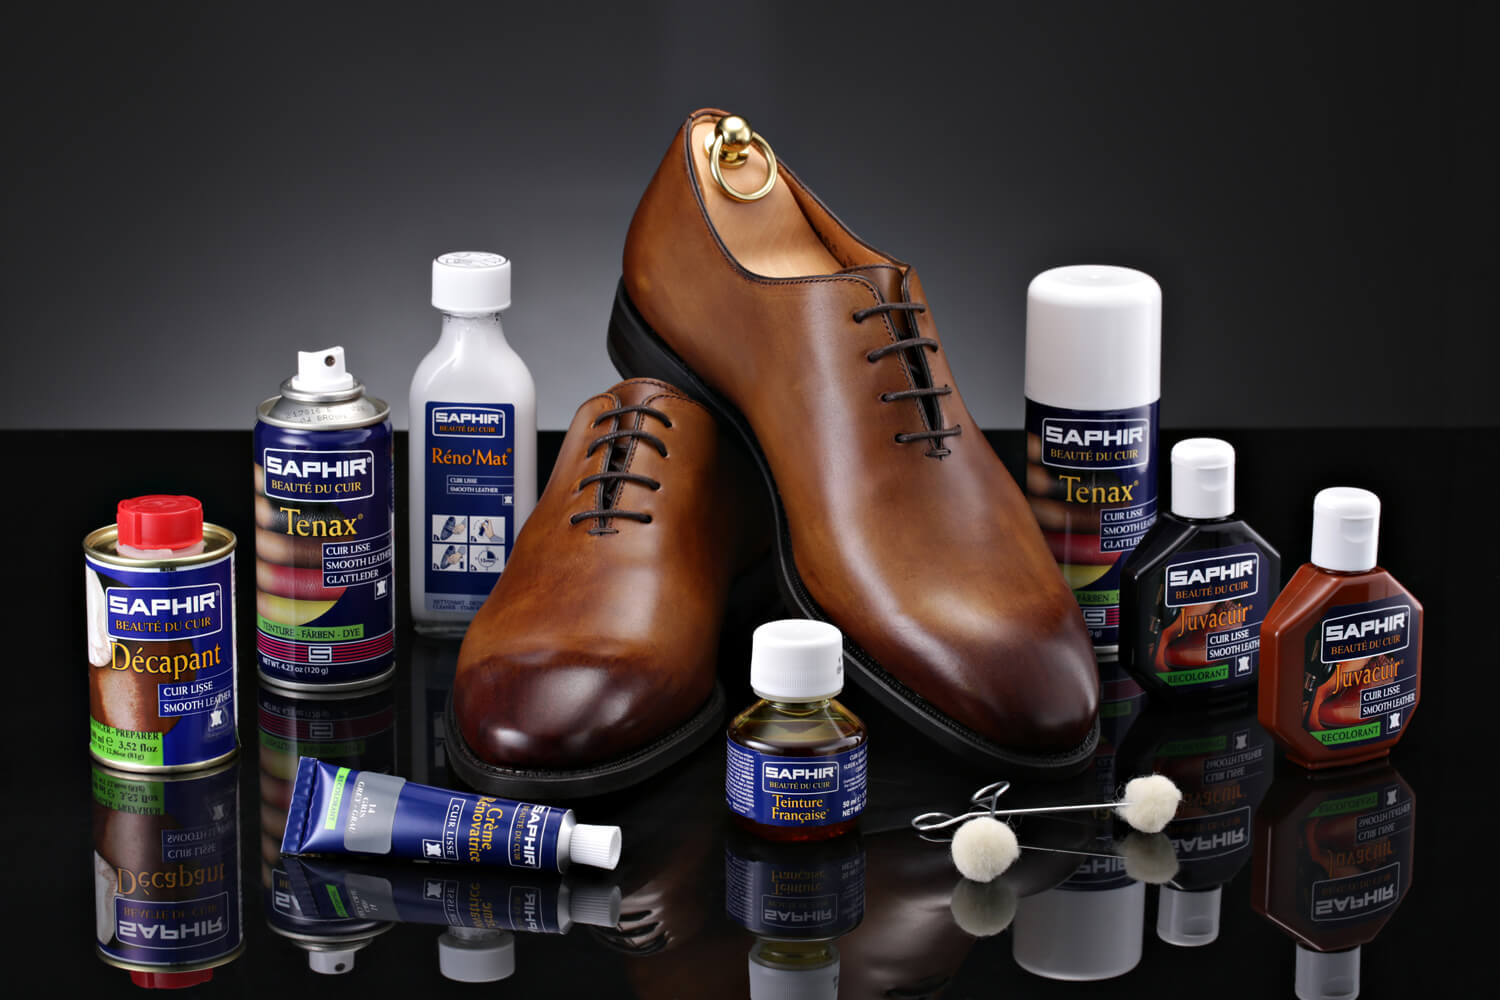 Правильный уход за лакированной обувью: чистка, обработка